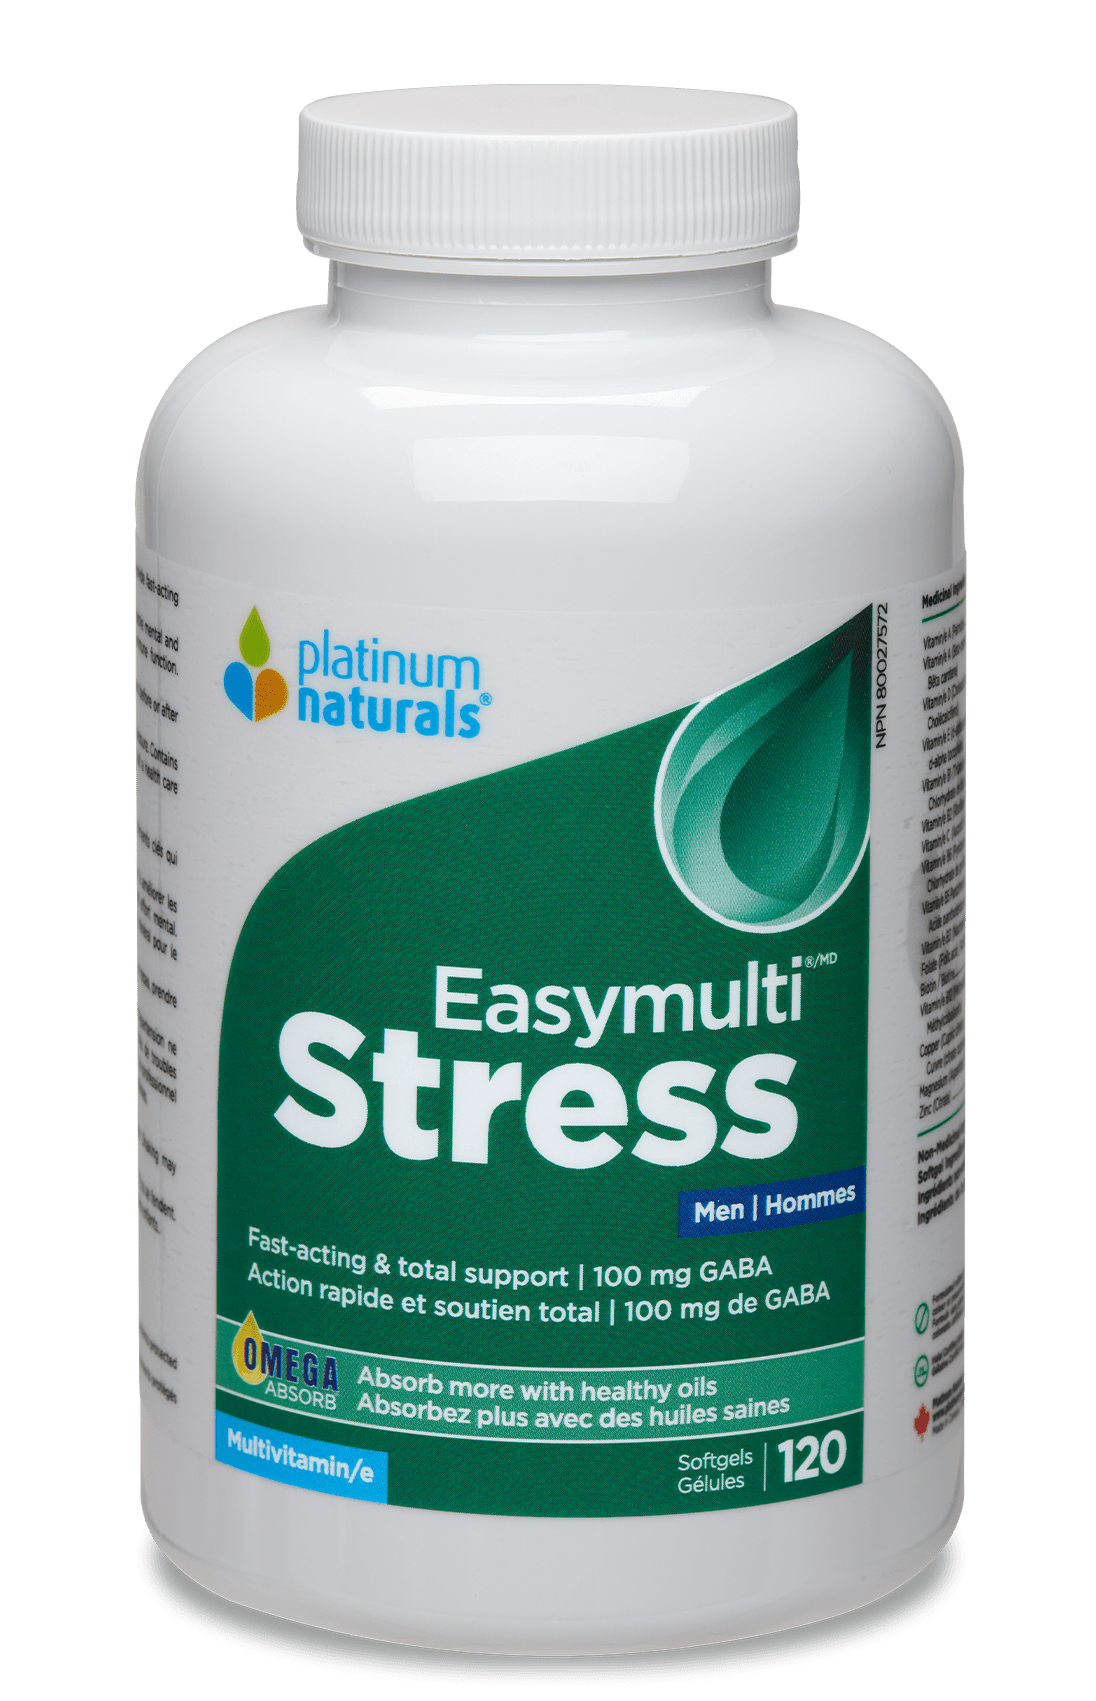 Easymulti Stress for Men Multivitamin cg-dev-platinumnaturals 120 